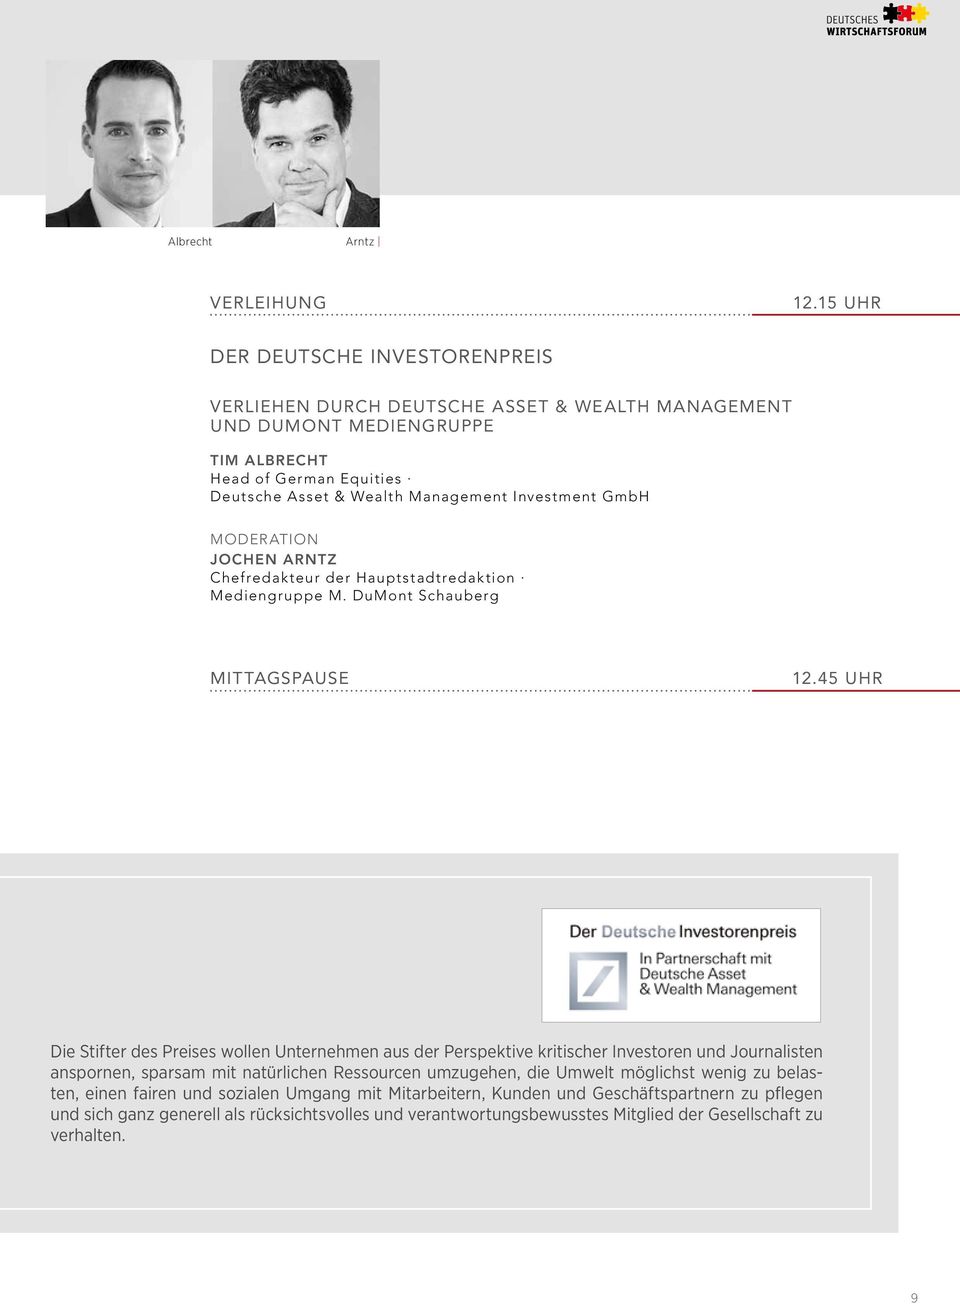 Investment GmbH Moderation Jochen Arntz Chefredakteur der Hauptstadtredaktion Mediengruppe M. DuMont Schauberg Mittagspause 12.